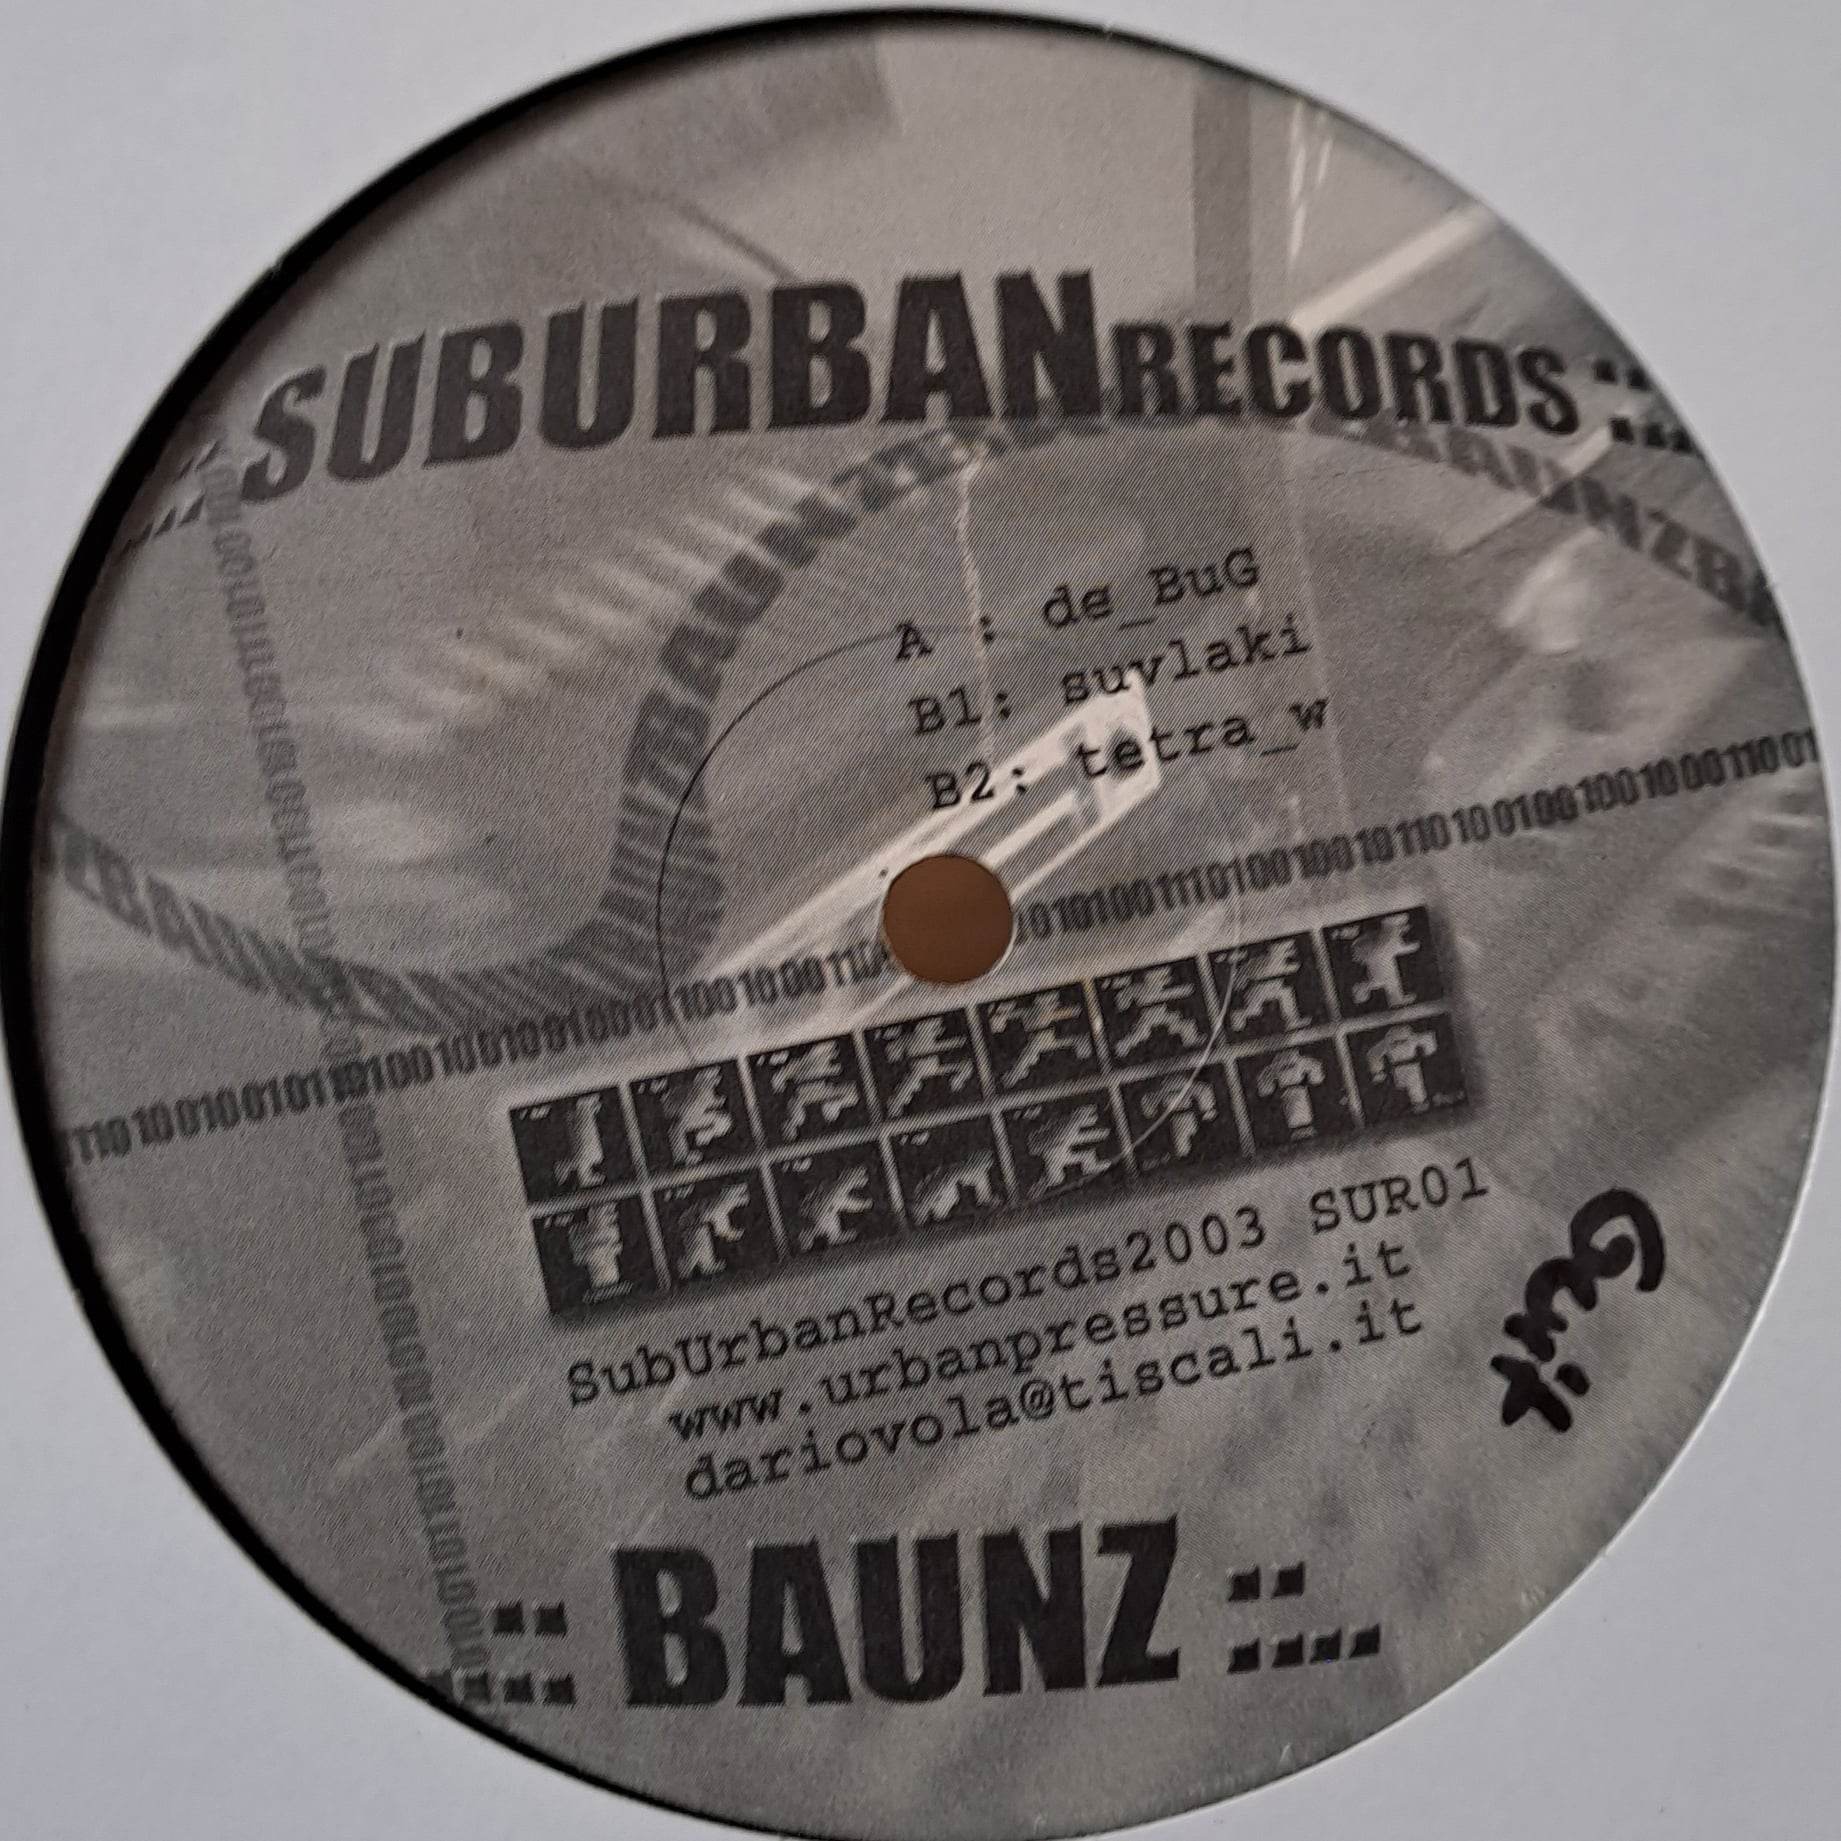 Suburban 01 - vinyle freetekno